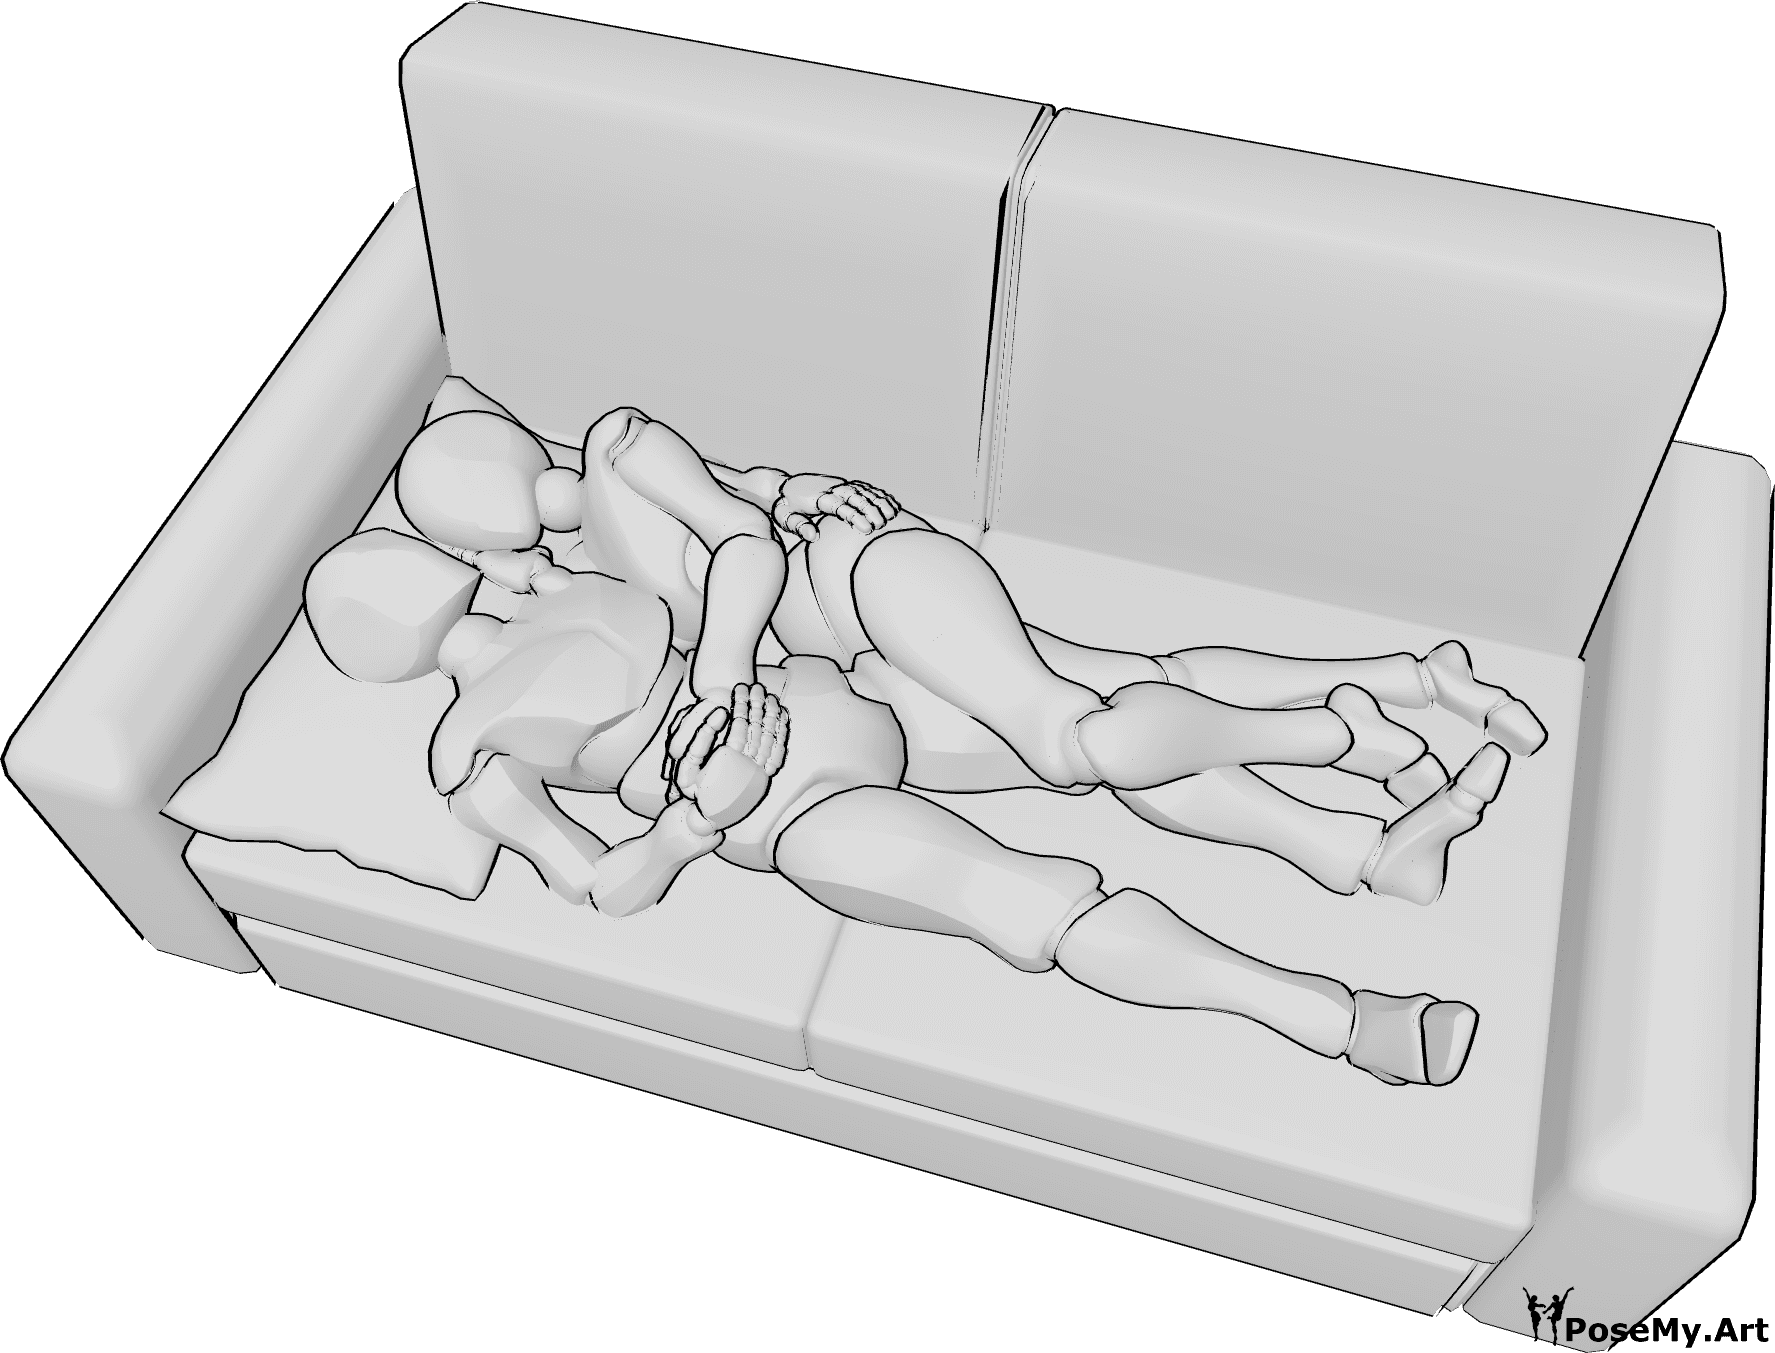 Riferimento alle pose- Posizione sdraiata di coccole - La donna e l'uomo sono sdraiati sul divano e si coccolano, abbracciati l'uno all'altra